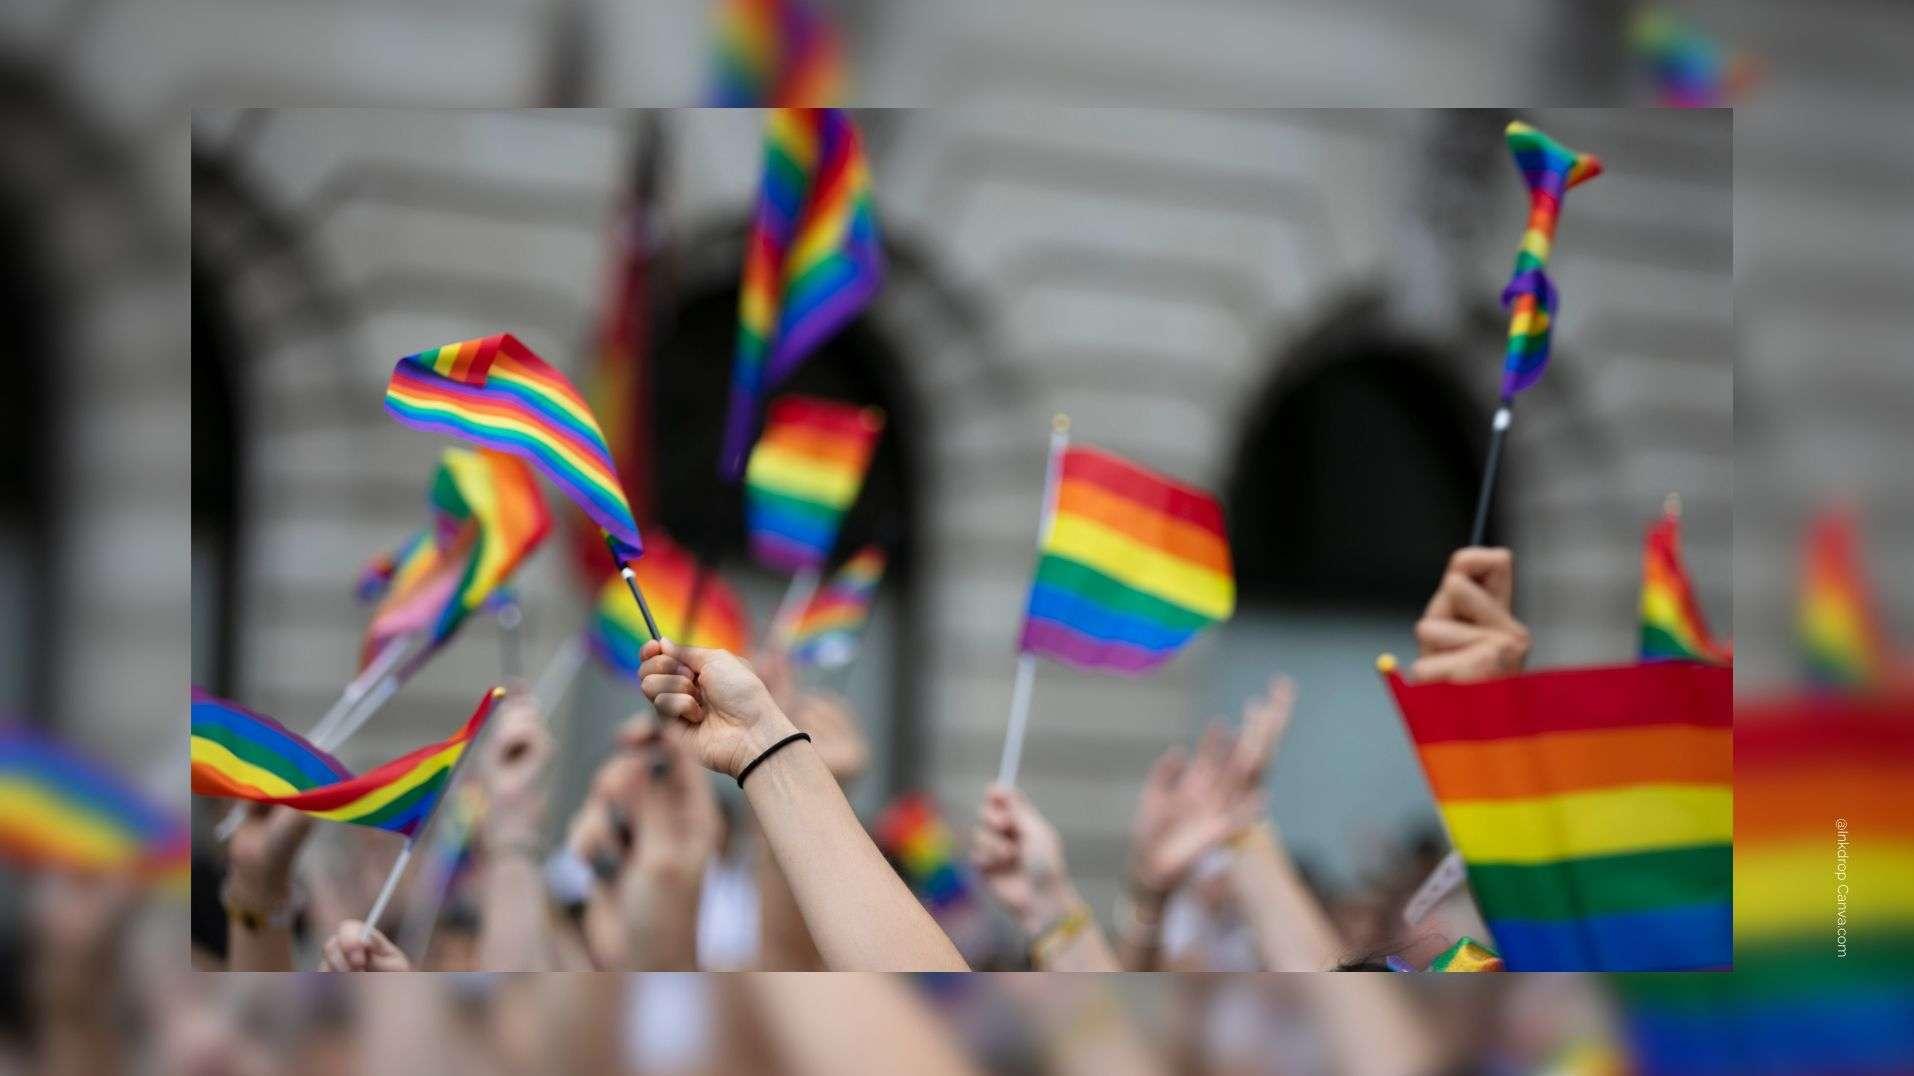 A Marseille, la communauté LGBT manifeste pour ses droits, craignant la montée du RN